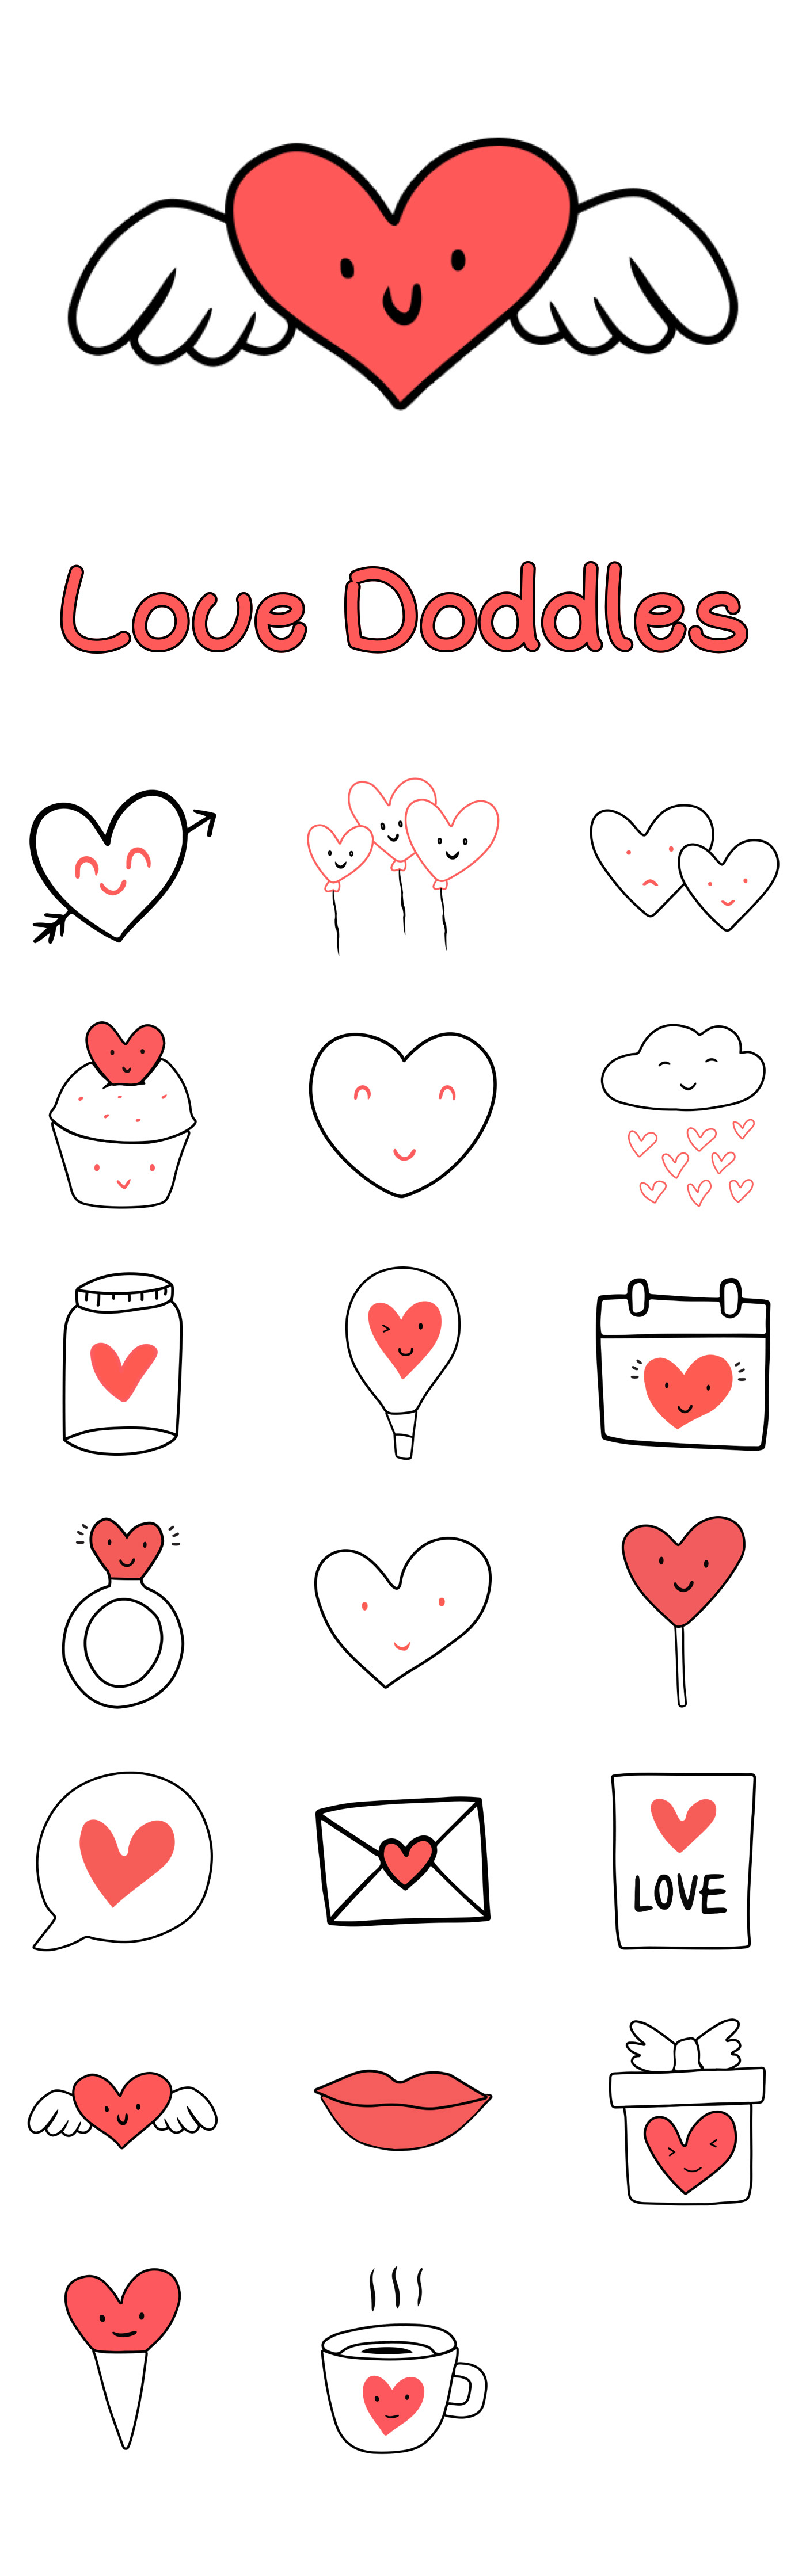 stickers Love instagram social media design story Layout. vector ILLUSTRATION  app